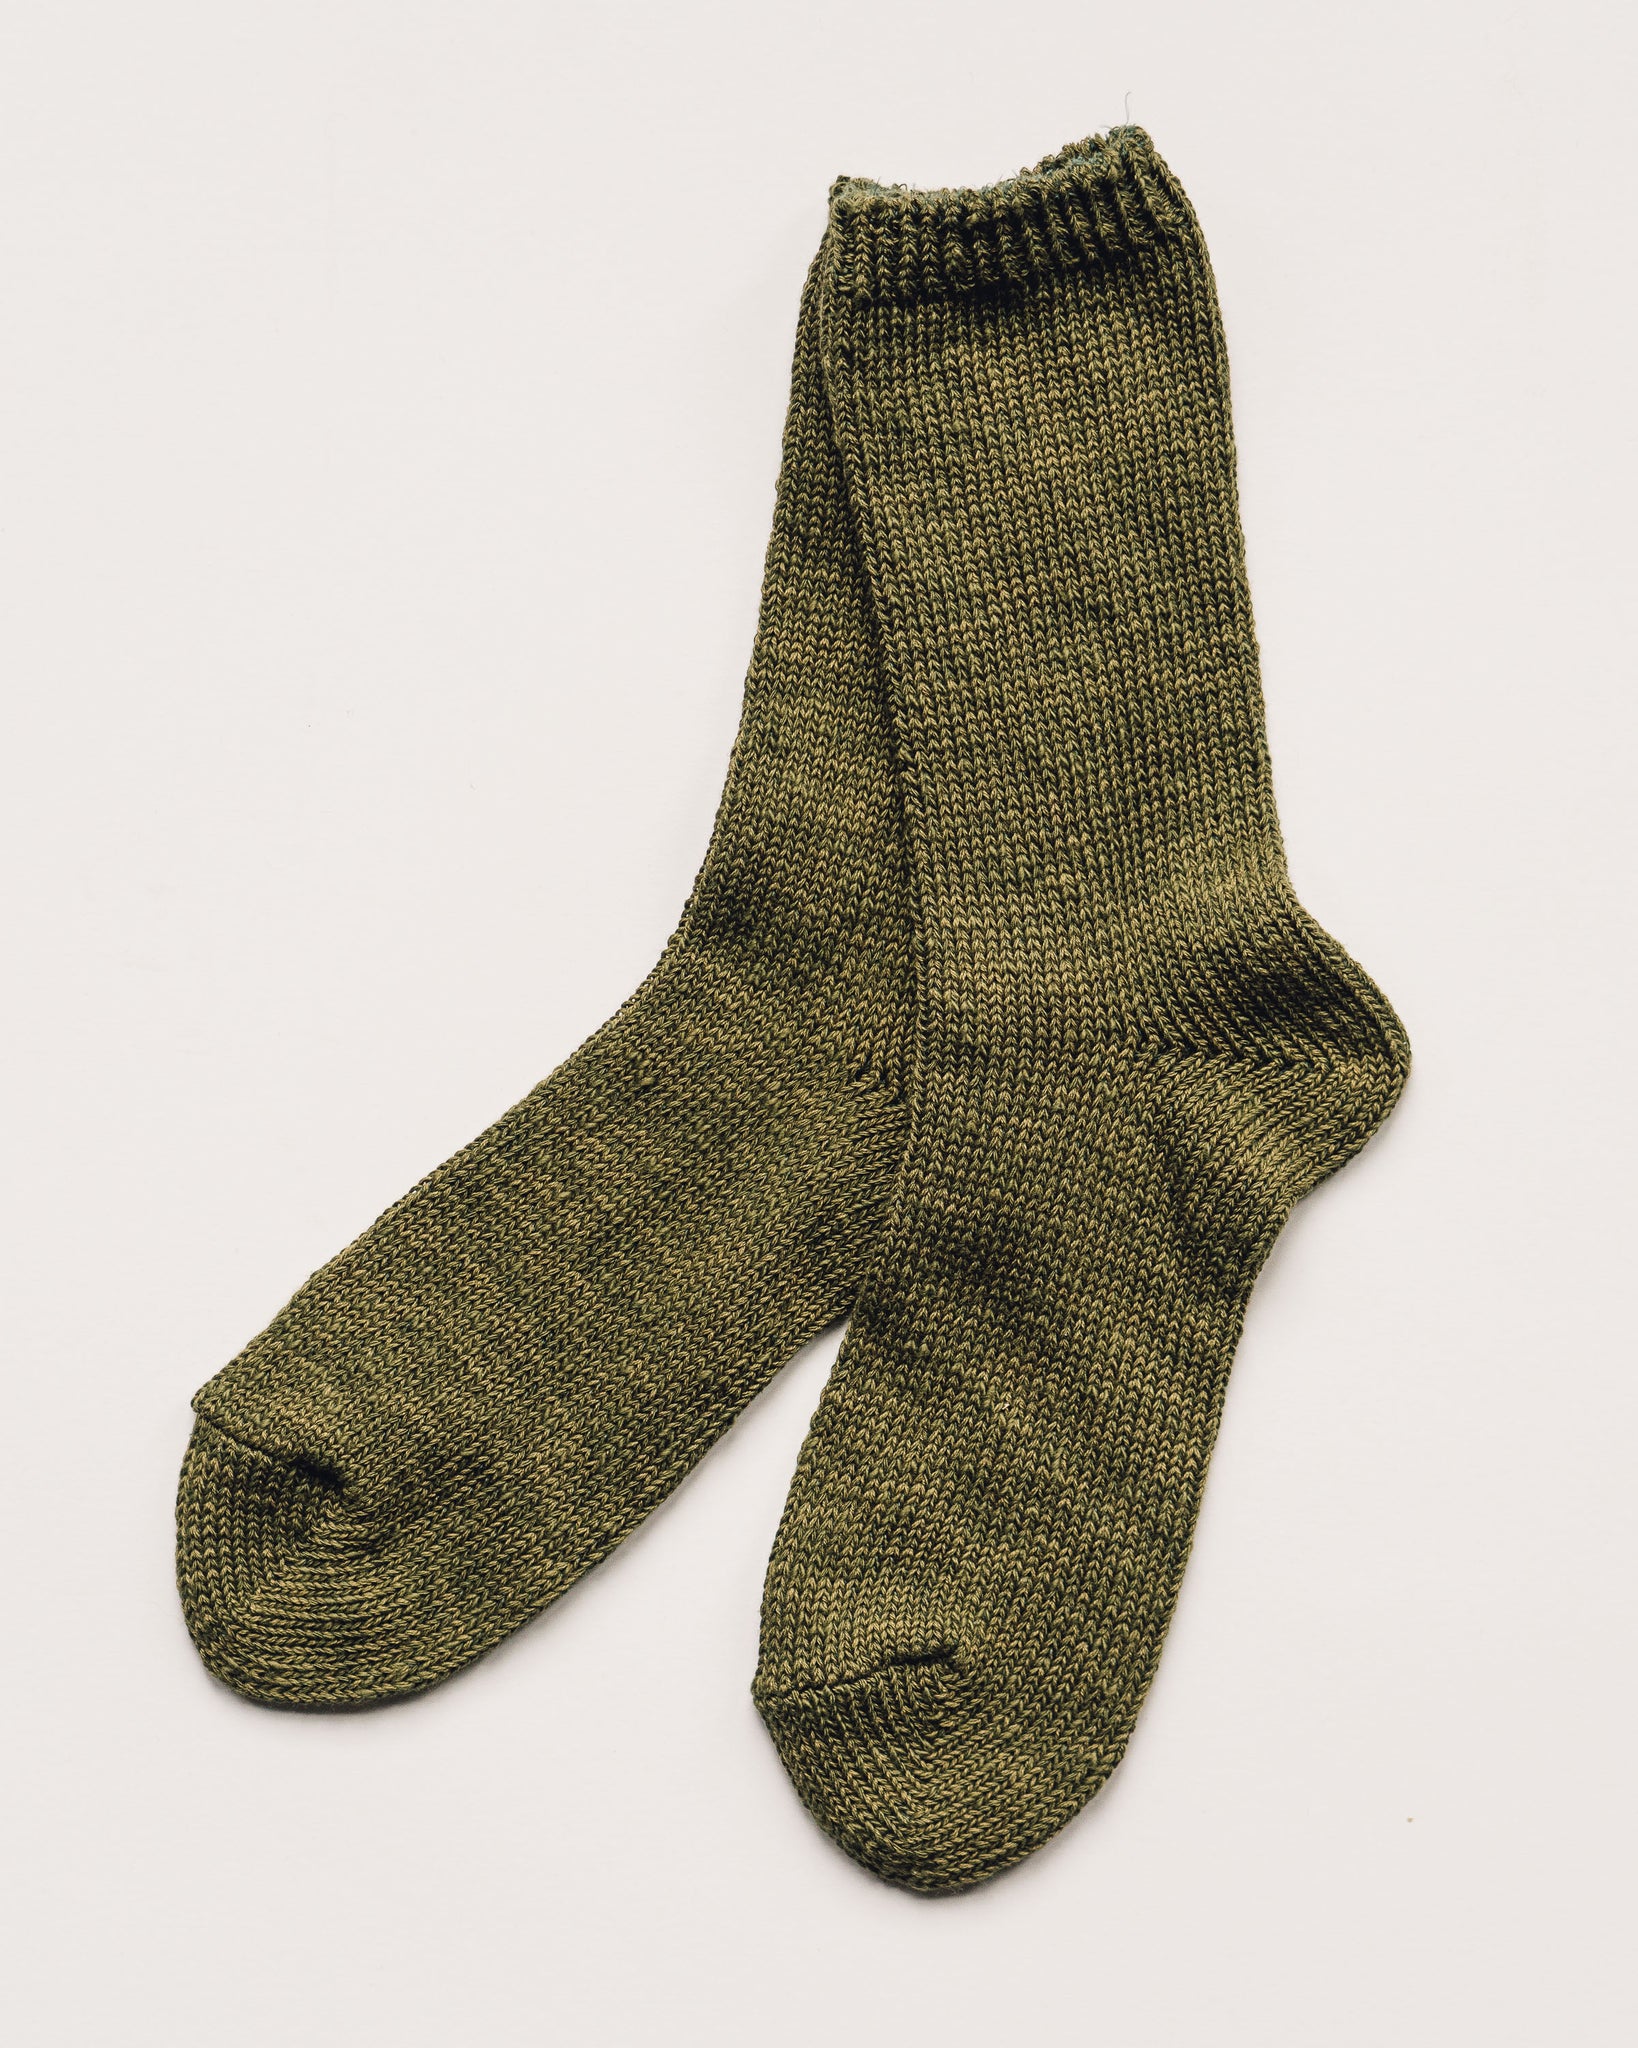 Kapital 56 Yarns Military Socks